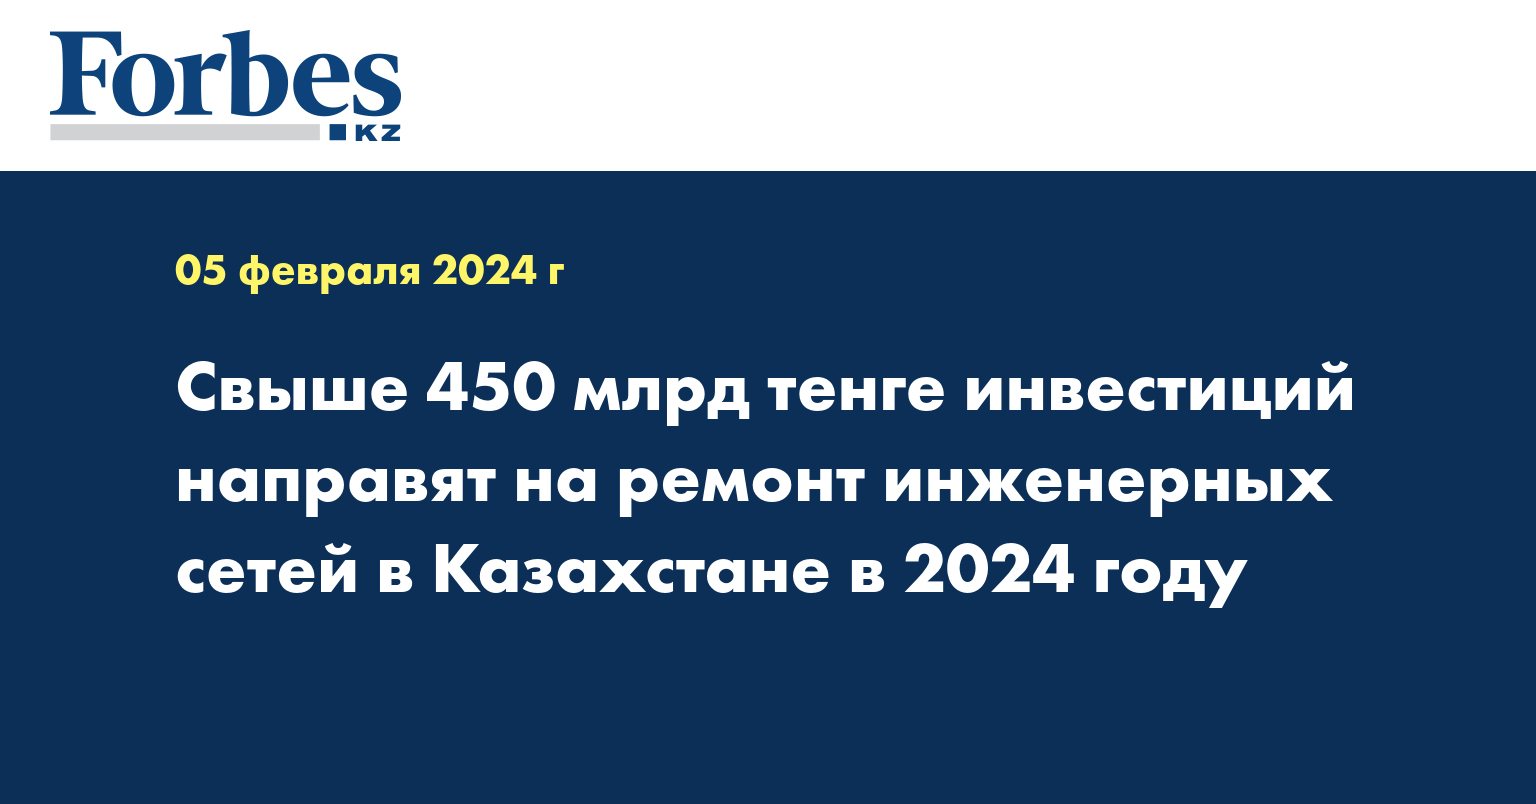 Свыше 450 млрд тенге инвестиций направят на ремонт инженерных сетей в Казахстане в 2024 году